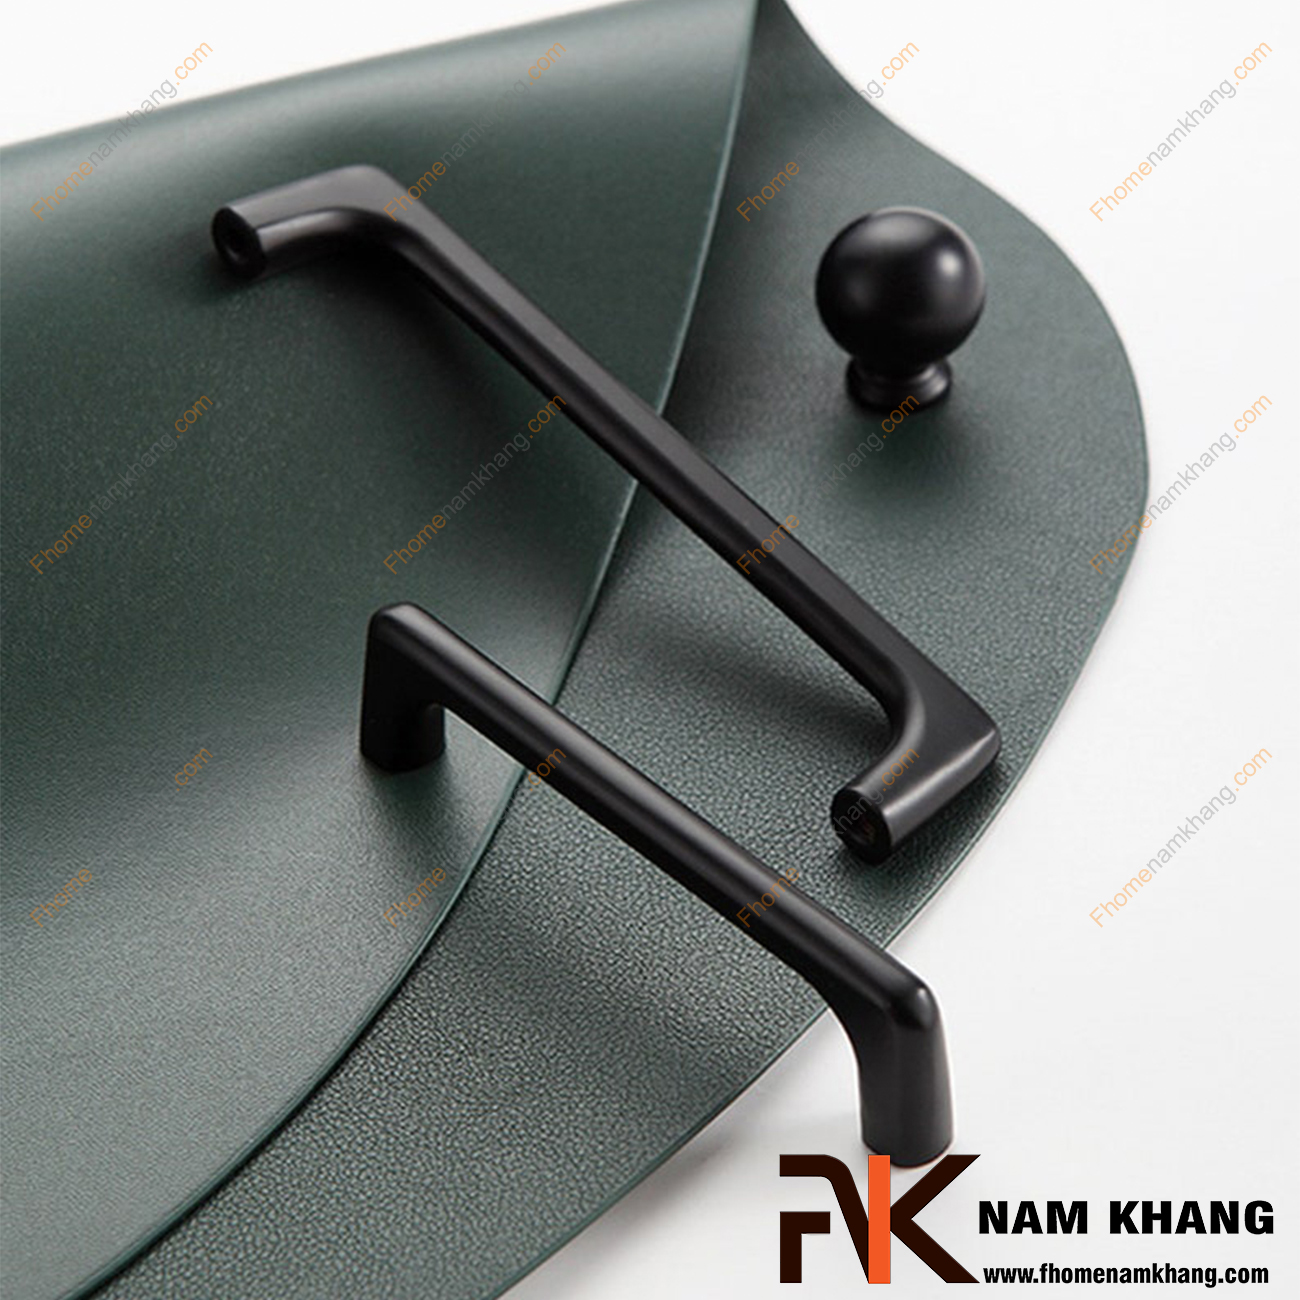 Tay nắm tủ dạng thanh tròn màu đen mờ NK211-D là dòng tay nắm tủ mang phong cách nhỏ gọn, tiện dụng dạng thanh tròn bằng vật liệu hợp kim cao cấp.